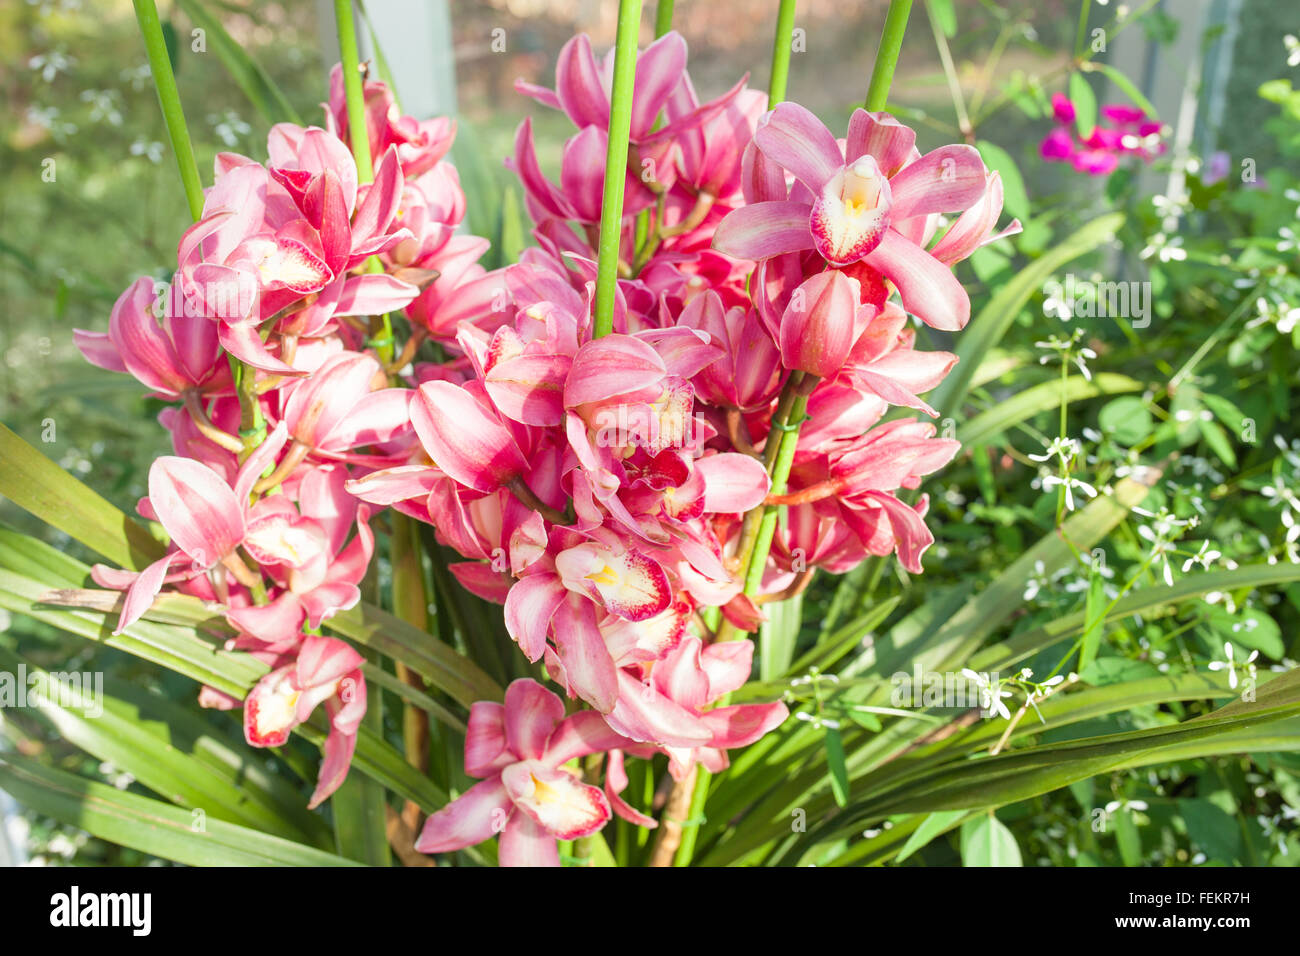 Orchidee rot gesprenkelt den Namen der Blume wegen Ähnlichkeit der Blume. Stockfoto